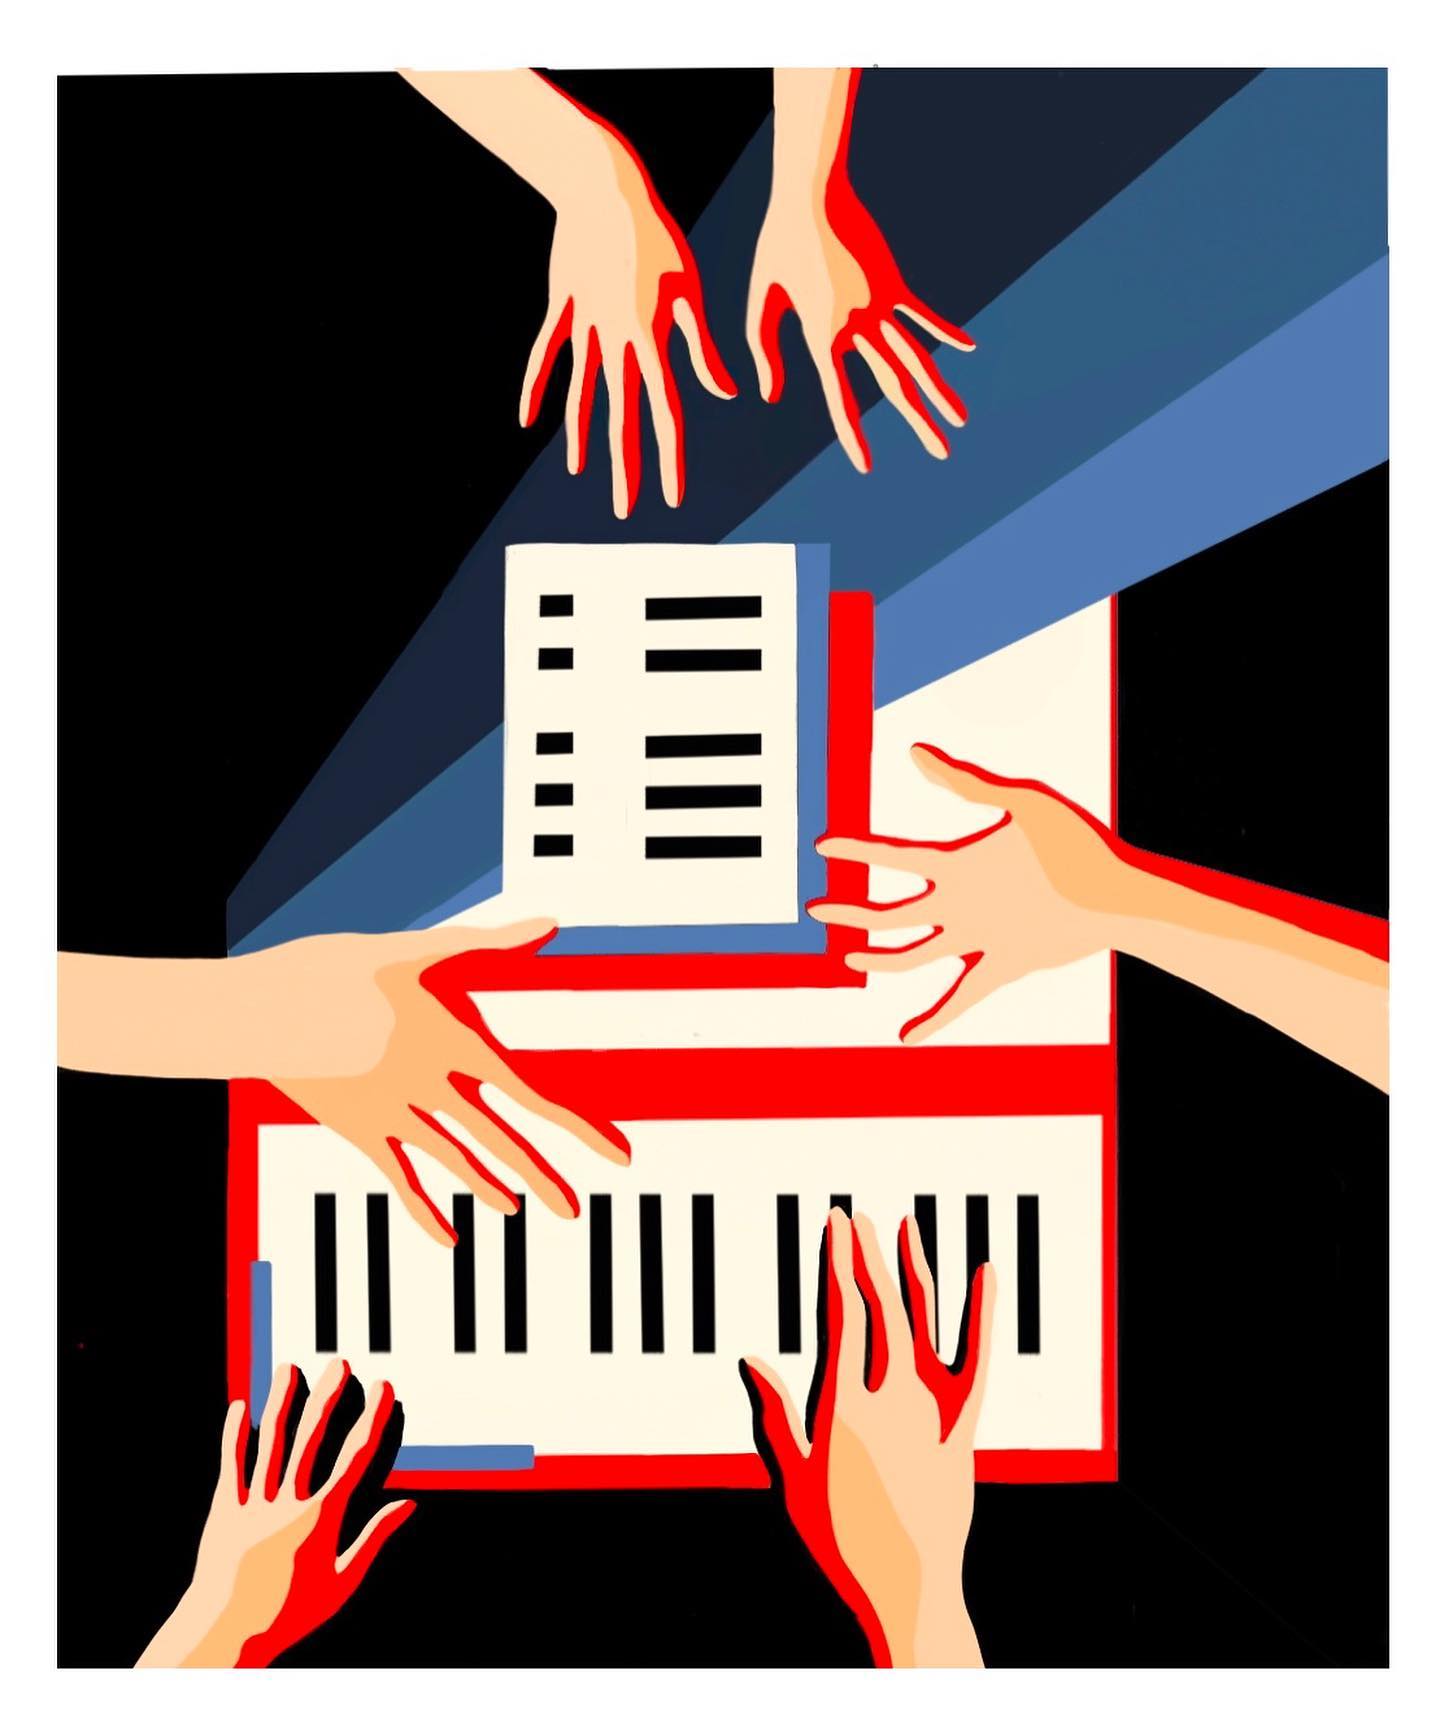 Piano exercises for stronger fingers. Digital art.